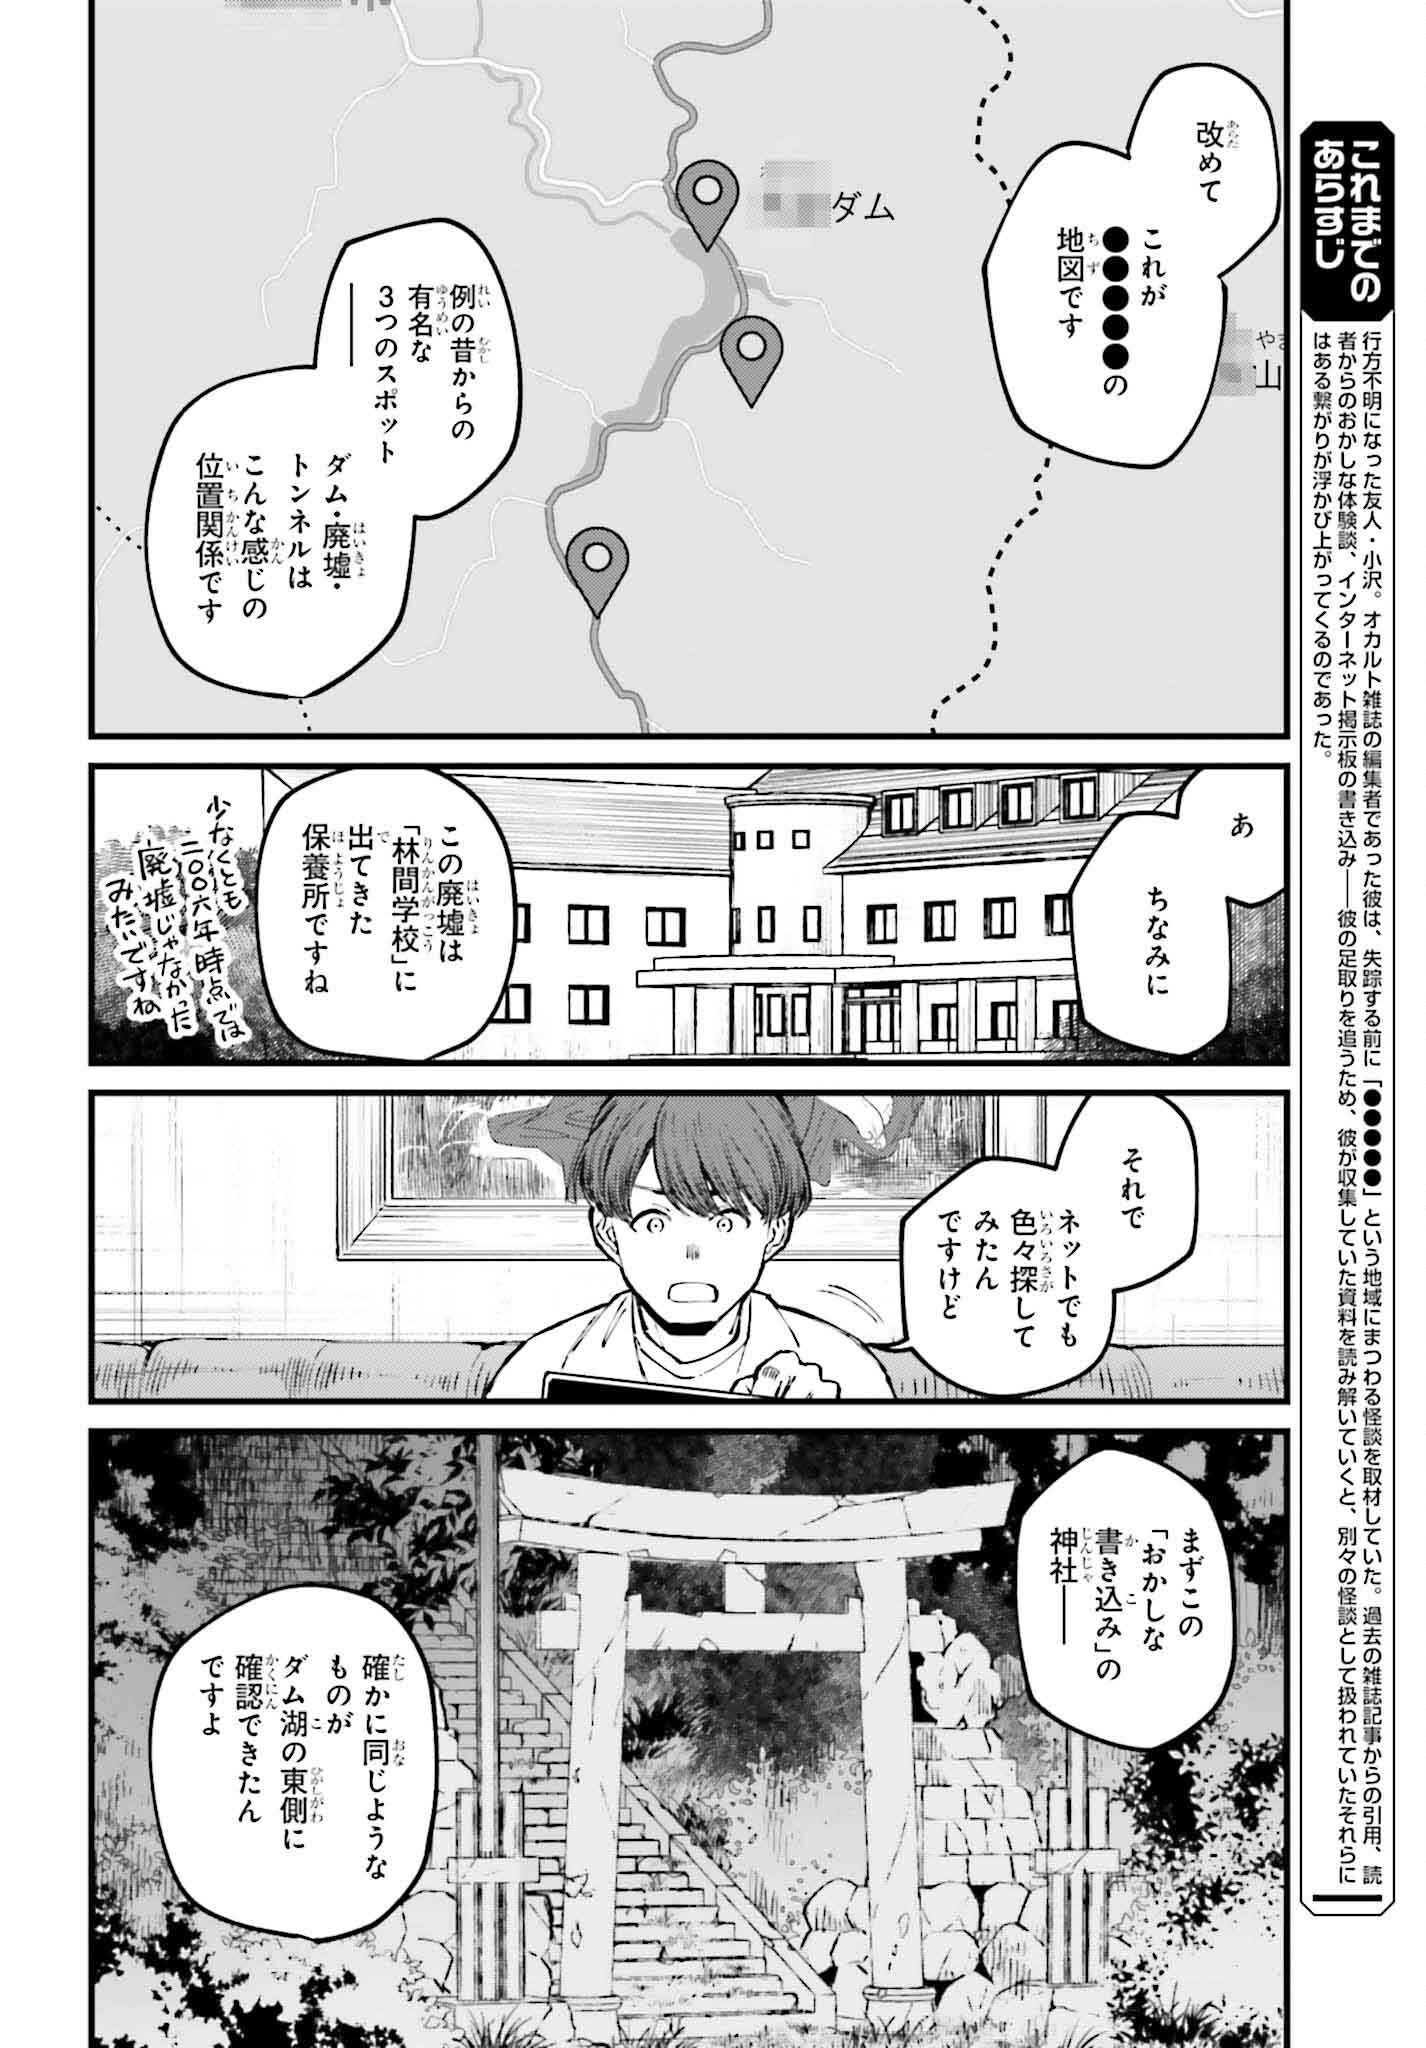 Kinki Chihou no Aru Basho ni Tsuite - Chapter 5 - Page 4